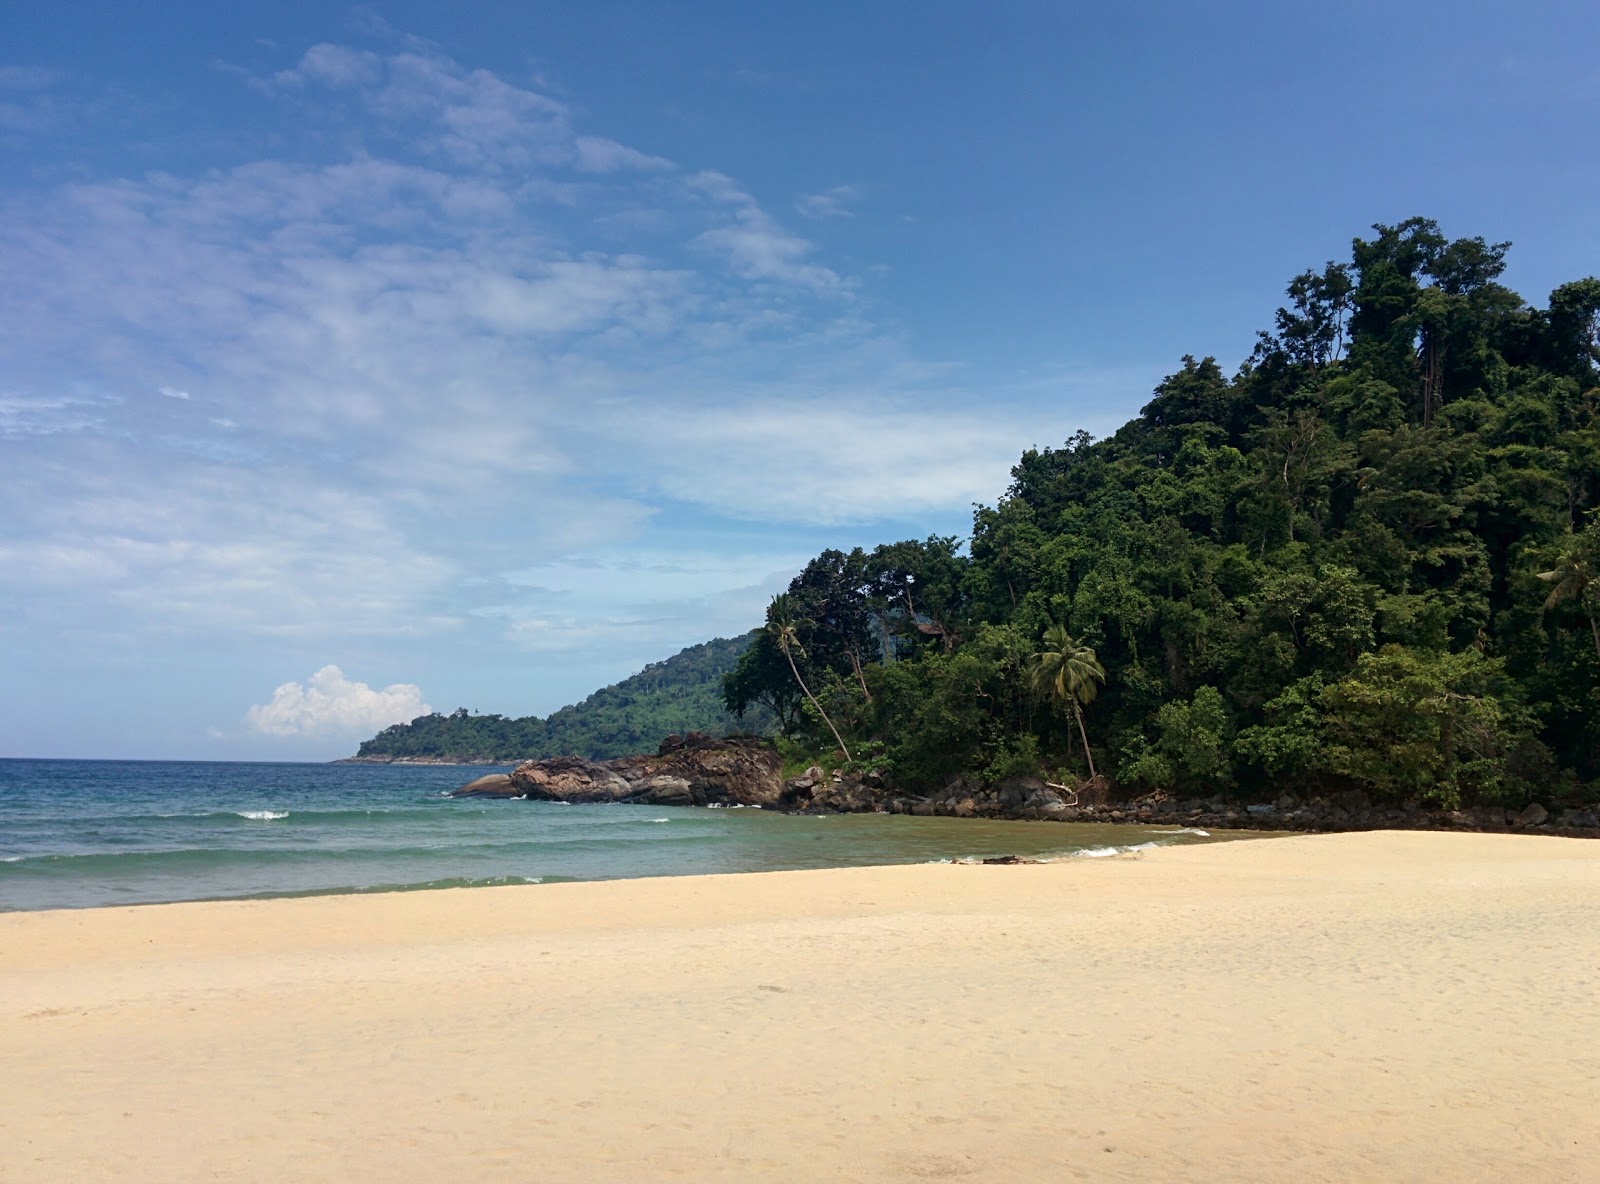 Fotografie cu Juara Beach - locul popular printre cunoscătorii de relaxare